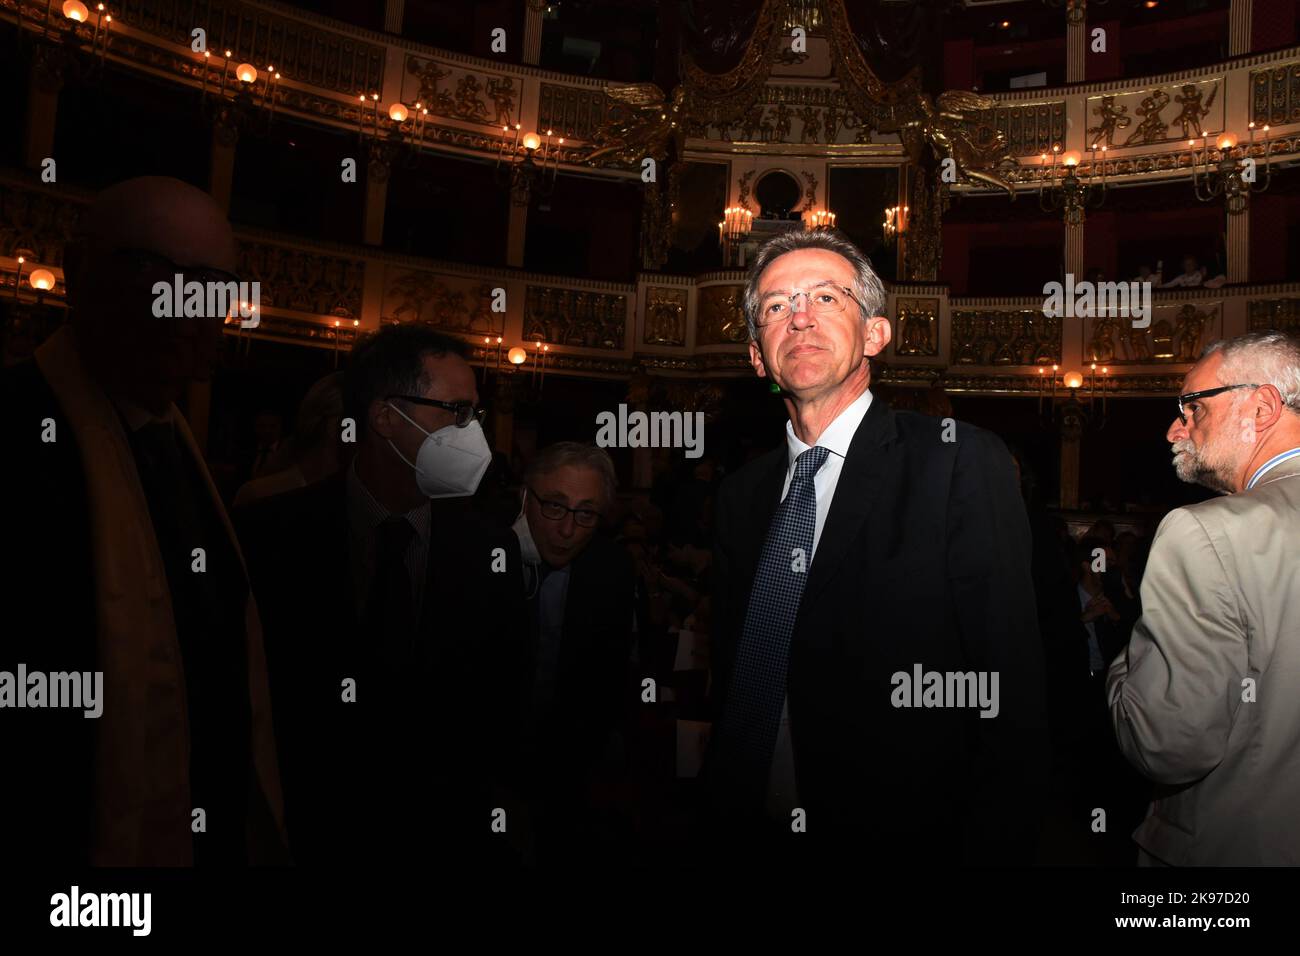 Le maire de Naples Gaetano Manfredi, ancien ministre de l'Université et de la recherche, au théâtre San Carlo de Naples avant le début du concert. Banque D'Images